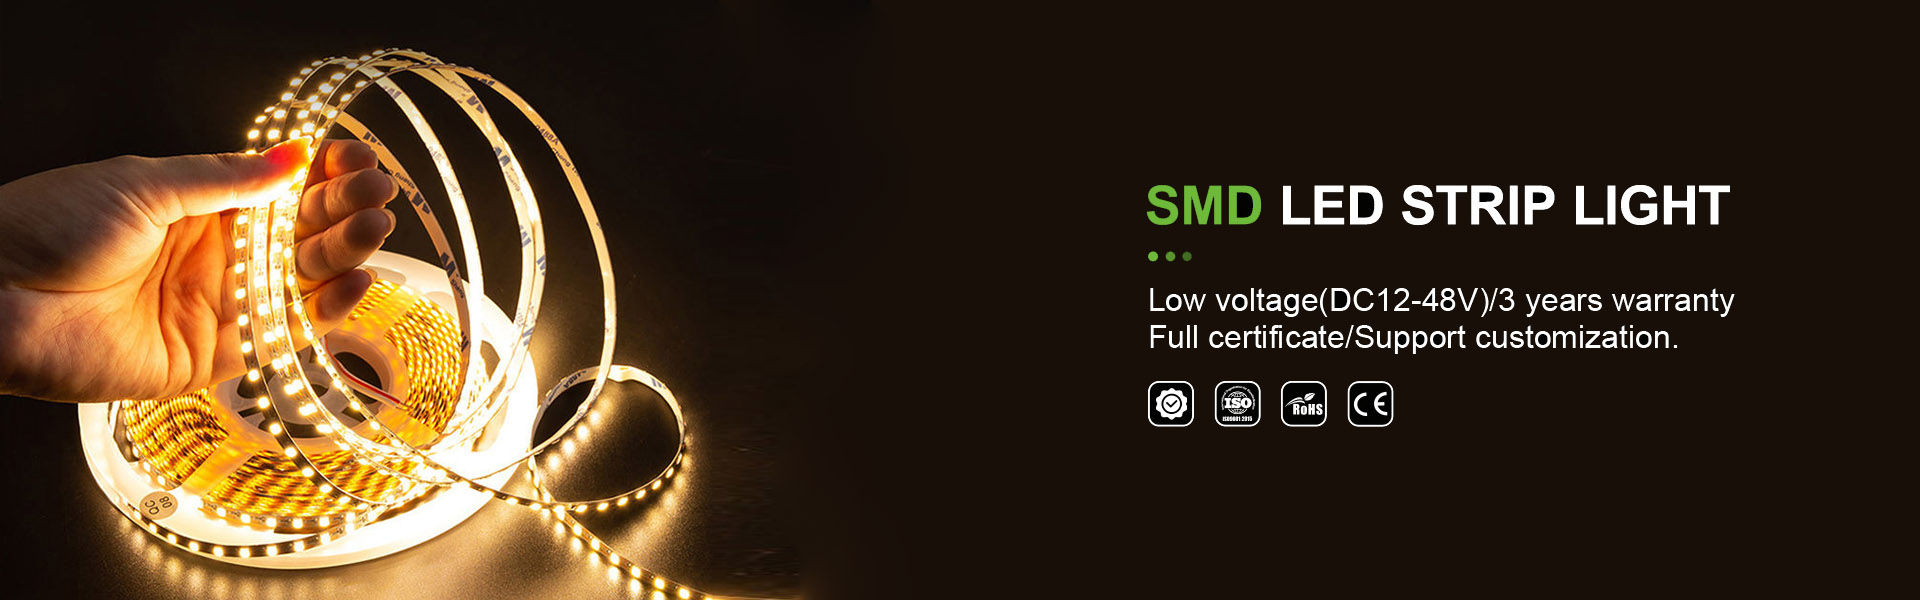 iluminação de tira de LED, luz deneon, iluminação de tira de espinheiro,AWS (SZ) Technology Company Limited